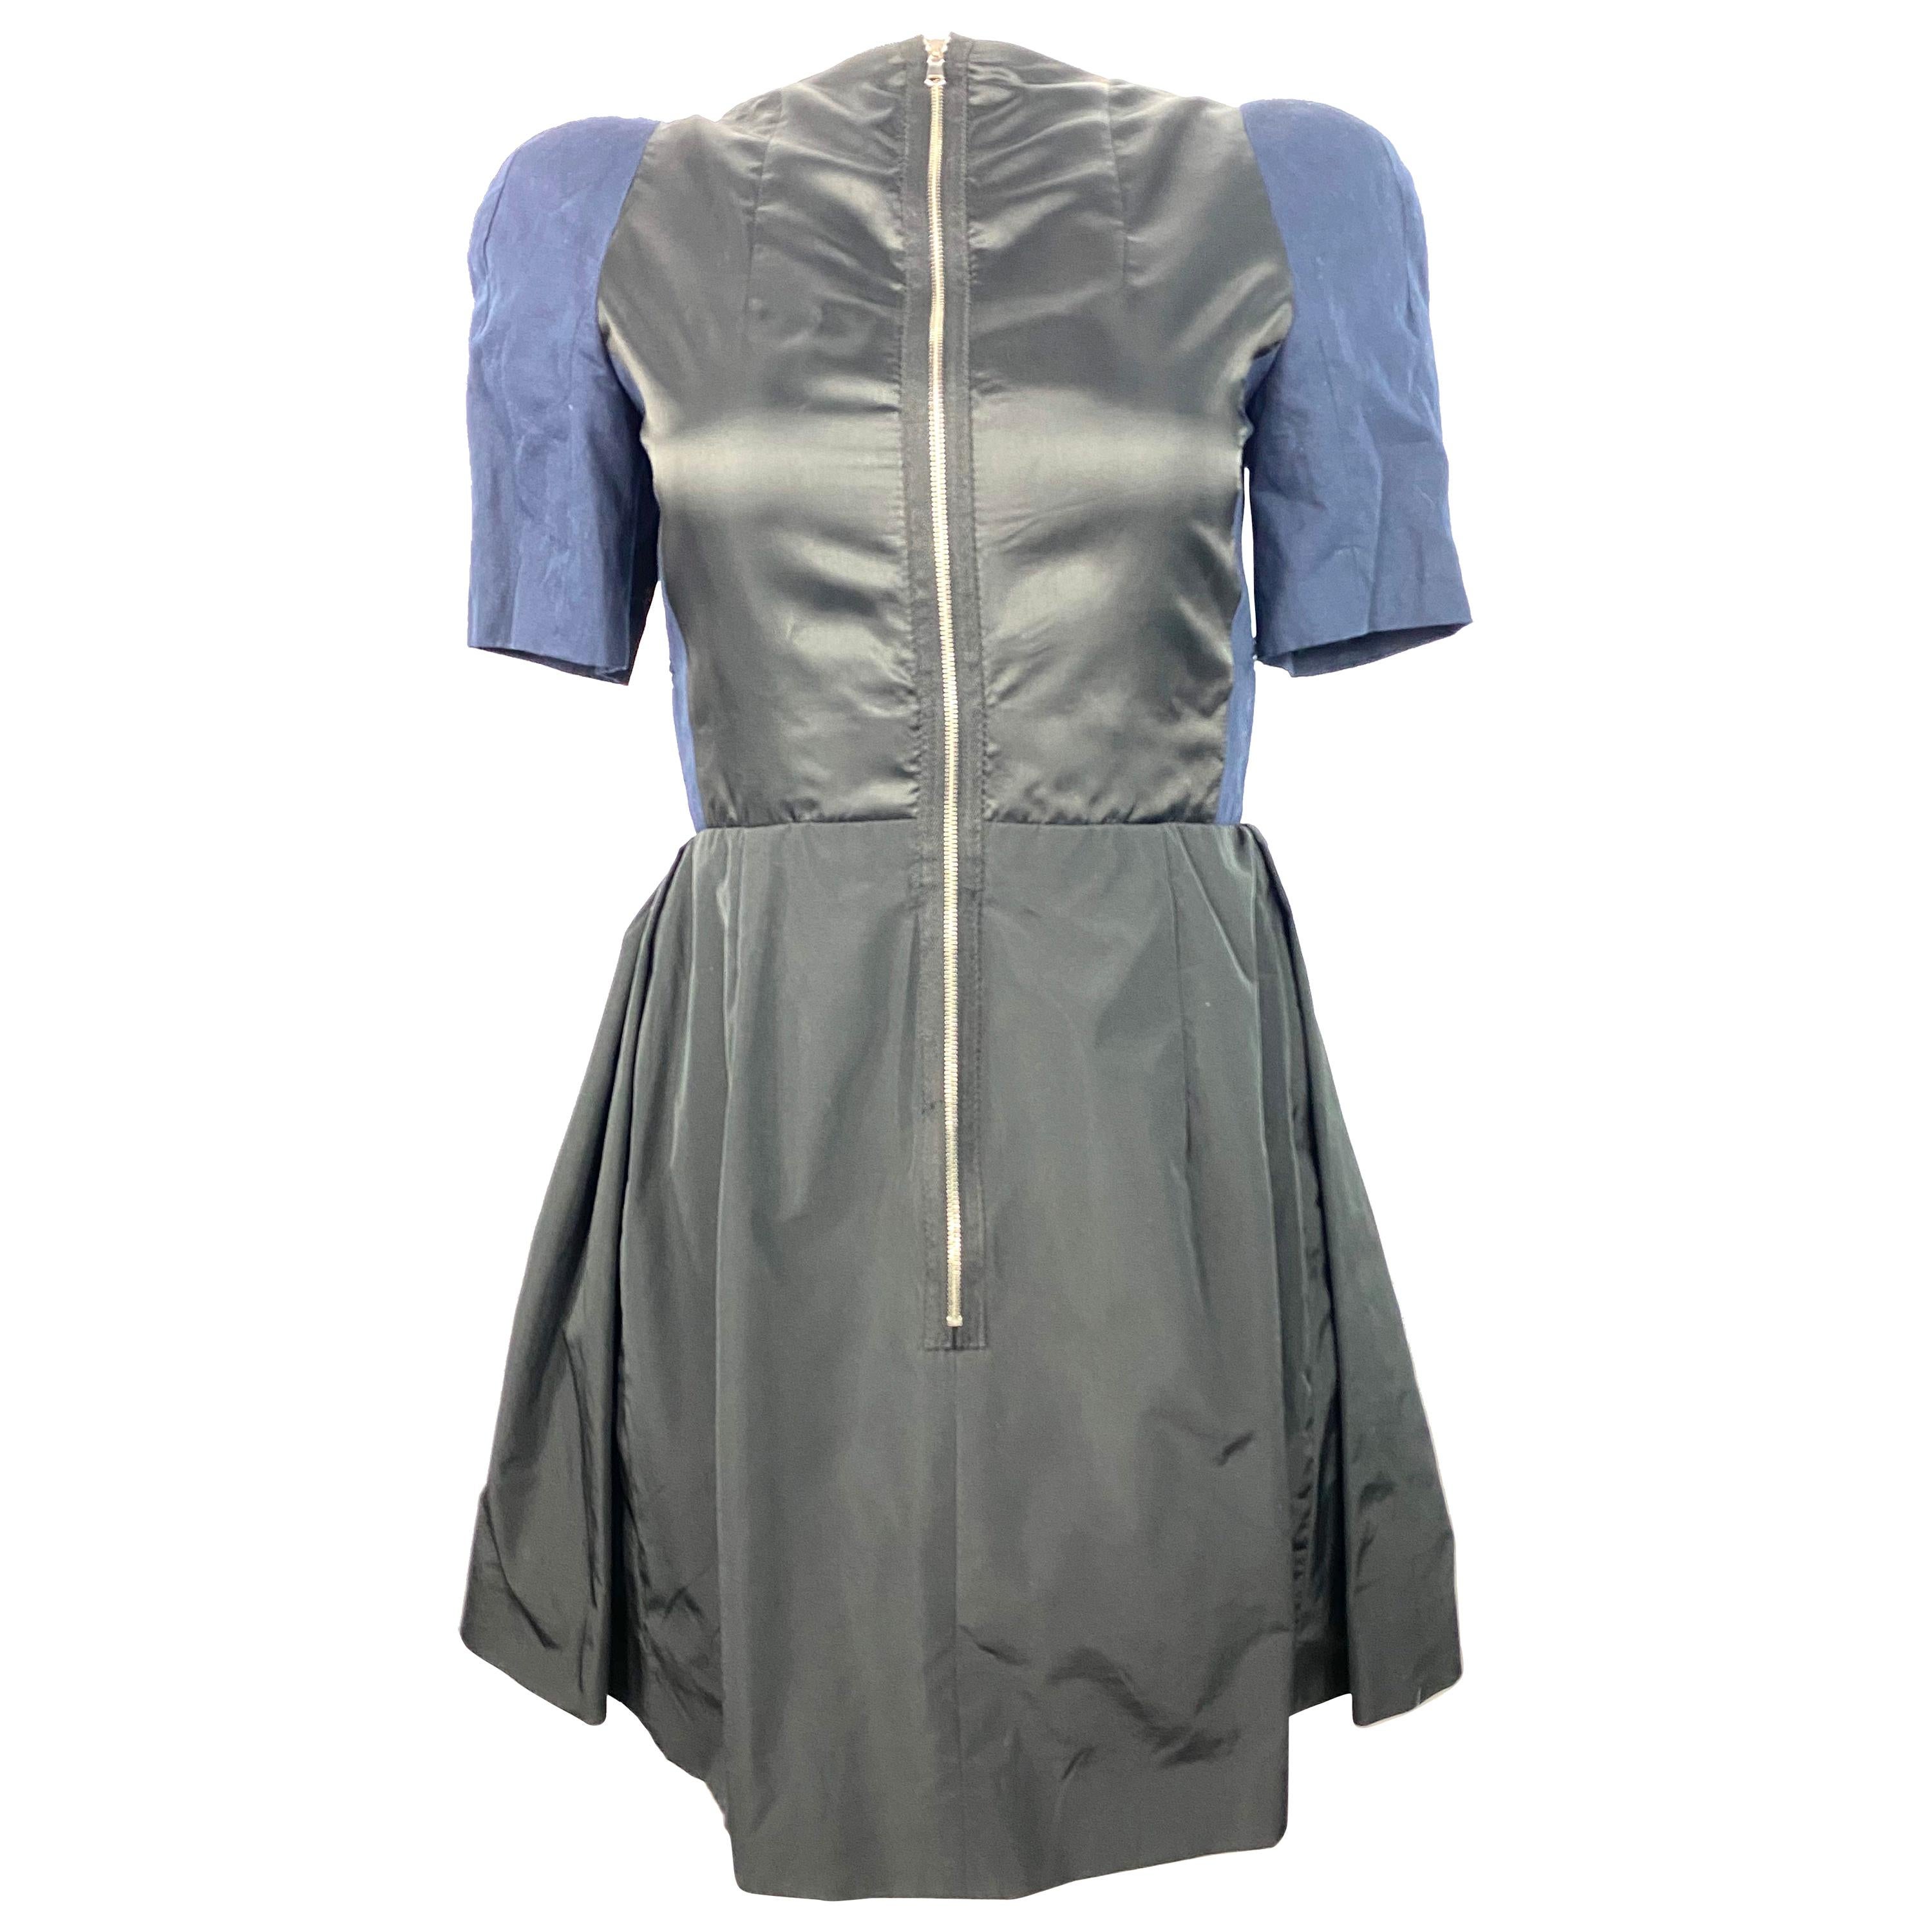 Vintage Carven: Dresses, Coats & More - 34 For Sale at 1stdibs 